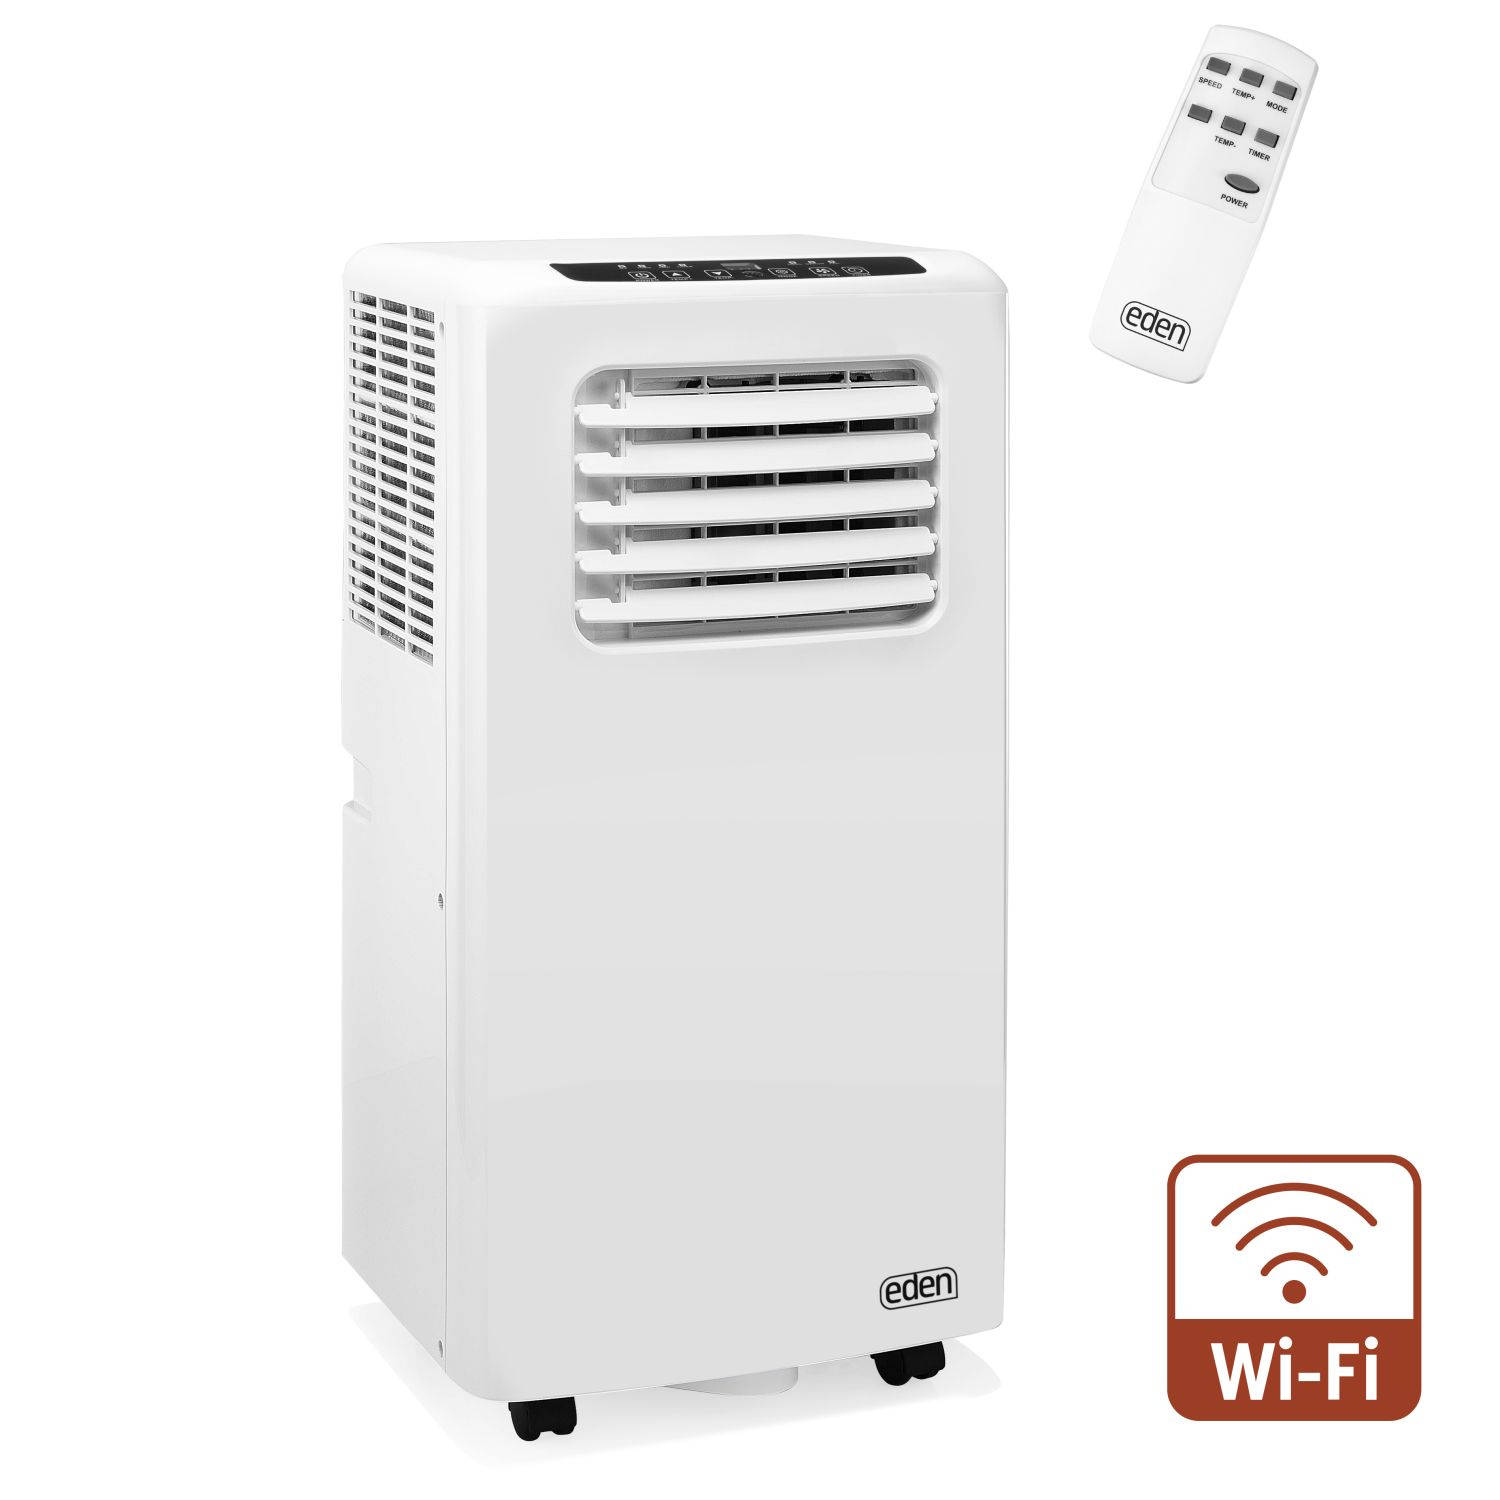 Eden ED-7016 Mobiele Airconditioner - Bestuurbaar via app - 7000 BTU - Energie klasse A - Gratis raamafdichtingskit